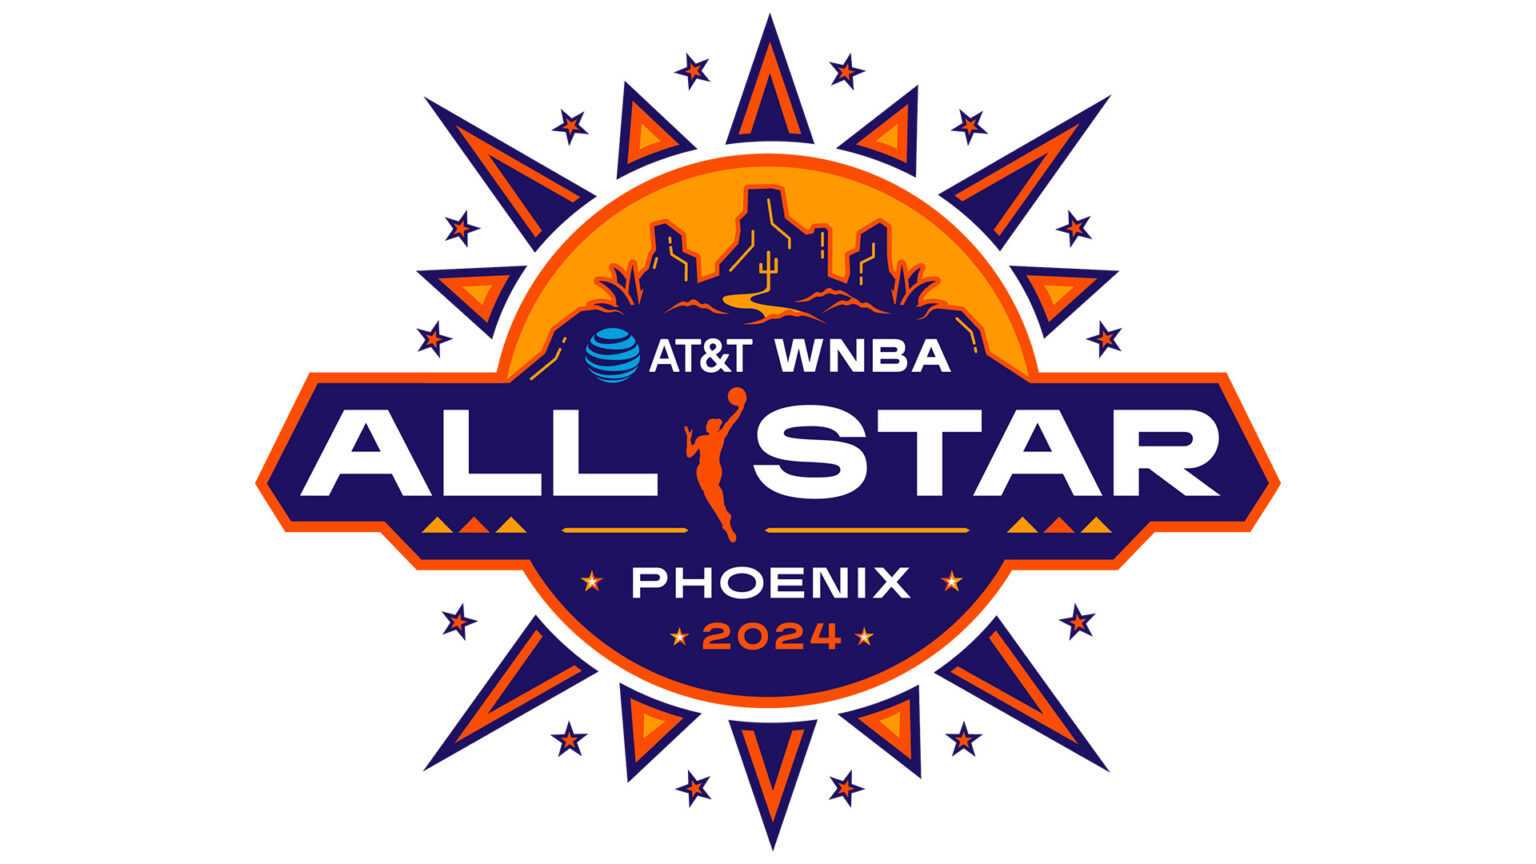 2024 AT&T WNBA AllStar Footprint Center